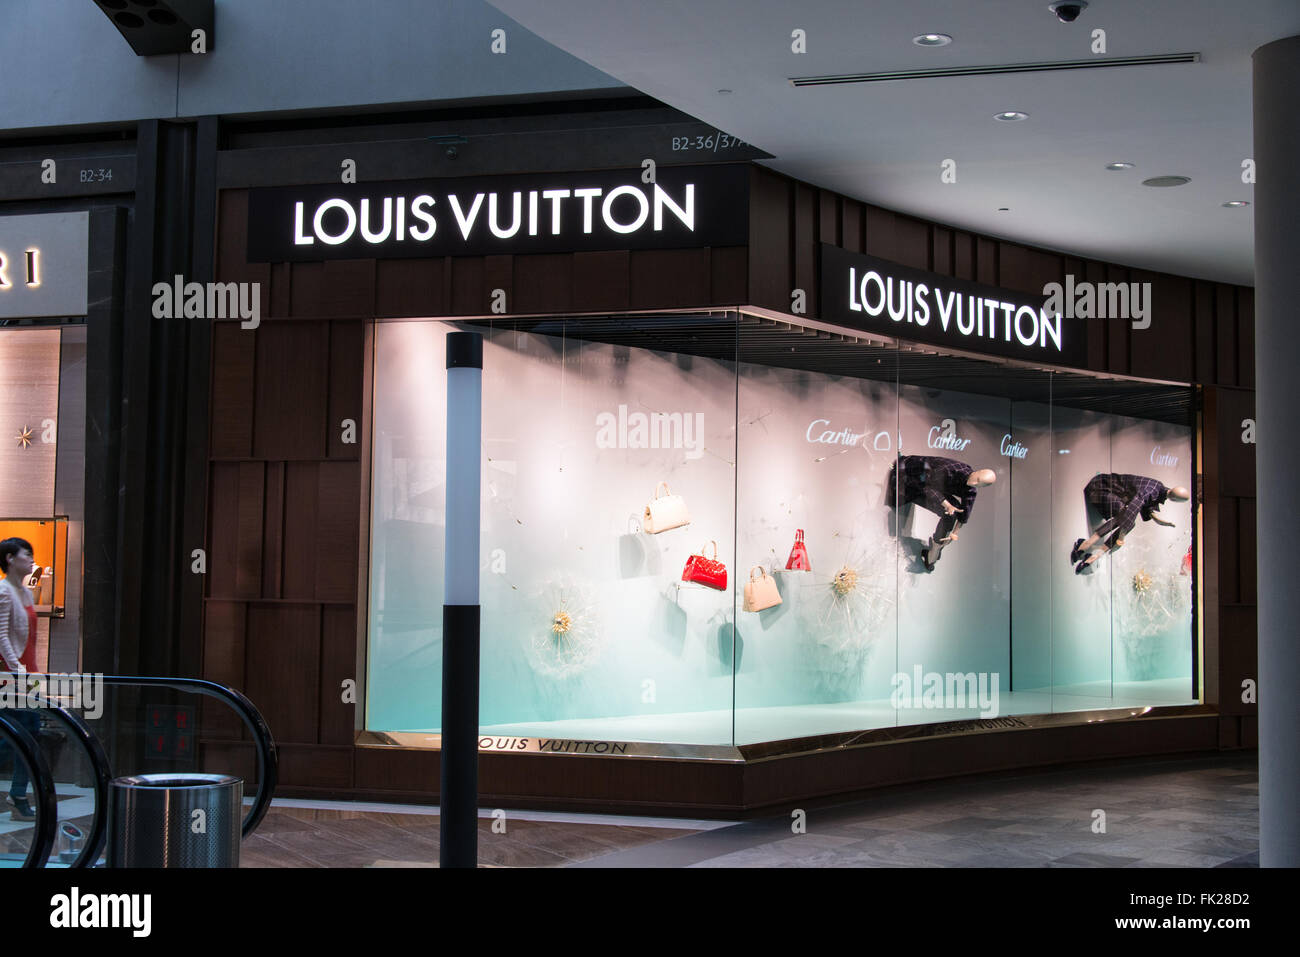 Singapore Feb 26 2015 Louis Vuitton Stock Photo 543021139